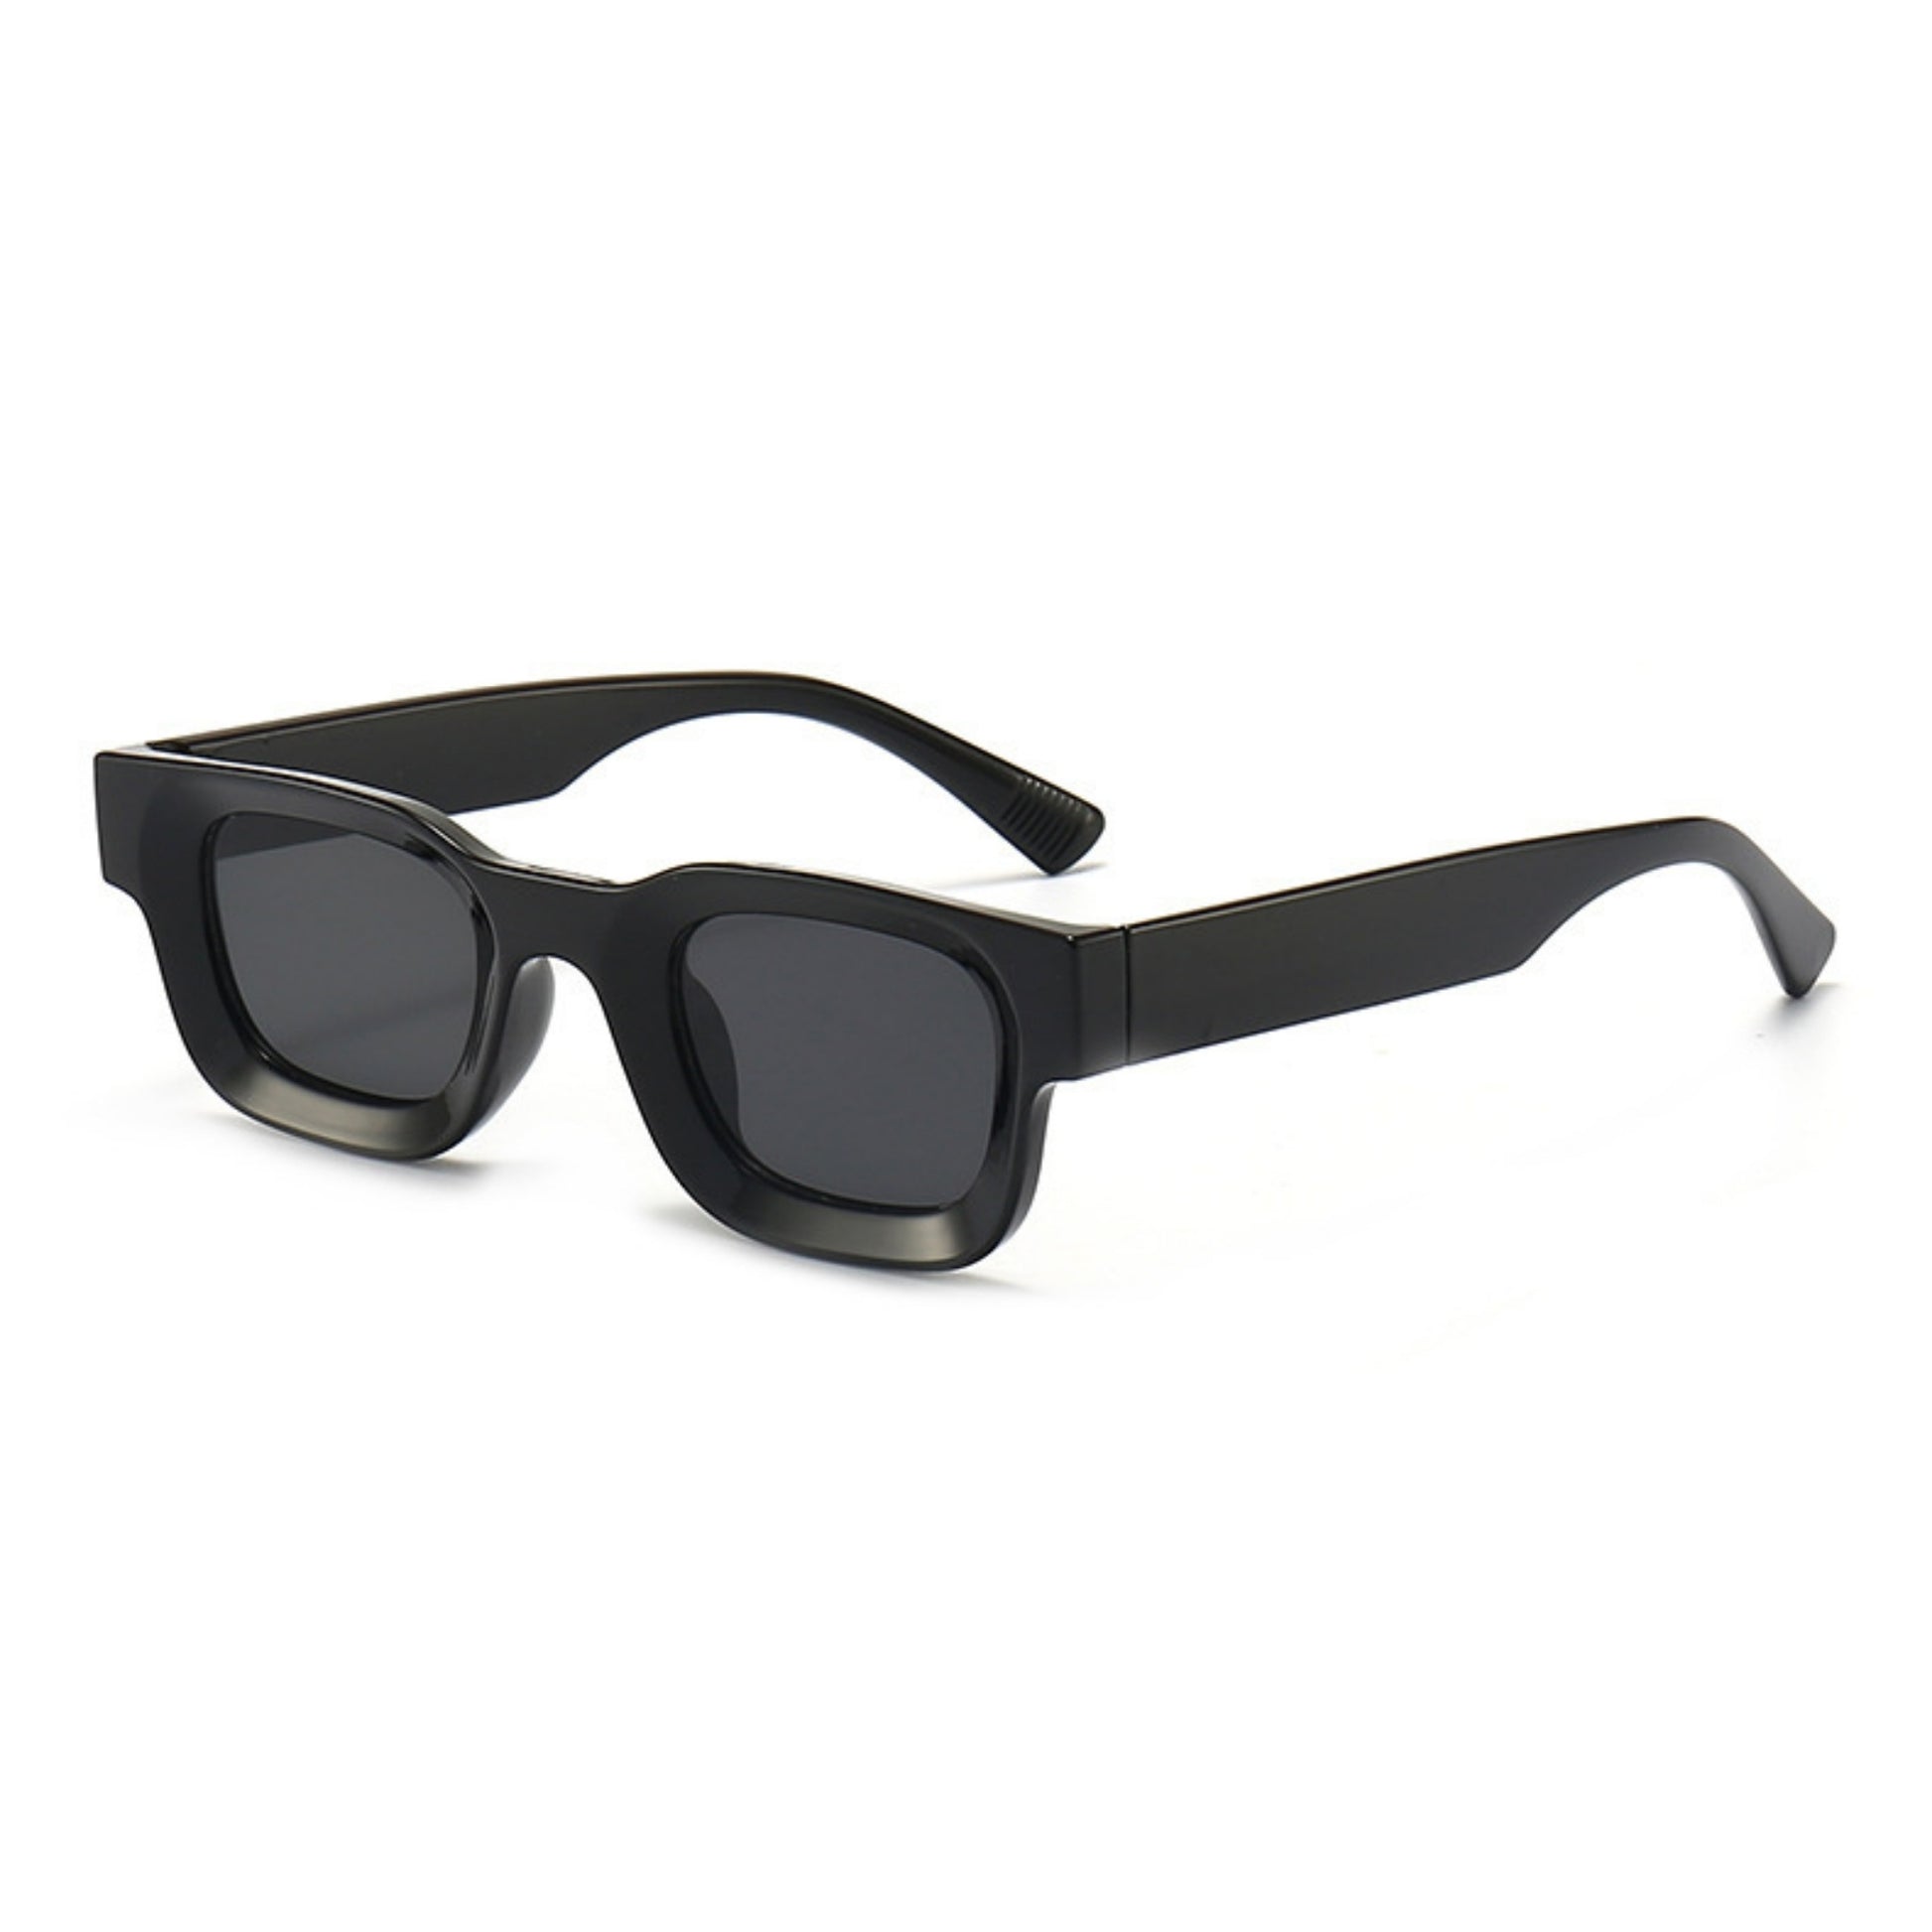 Τετράγωνα Γυαλιά ηλίου Taf από την Exposure Sunglasses με προστασία UV400 με μαύρο σκελετό και μαύρο φακό.Πλαινή όψη.